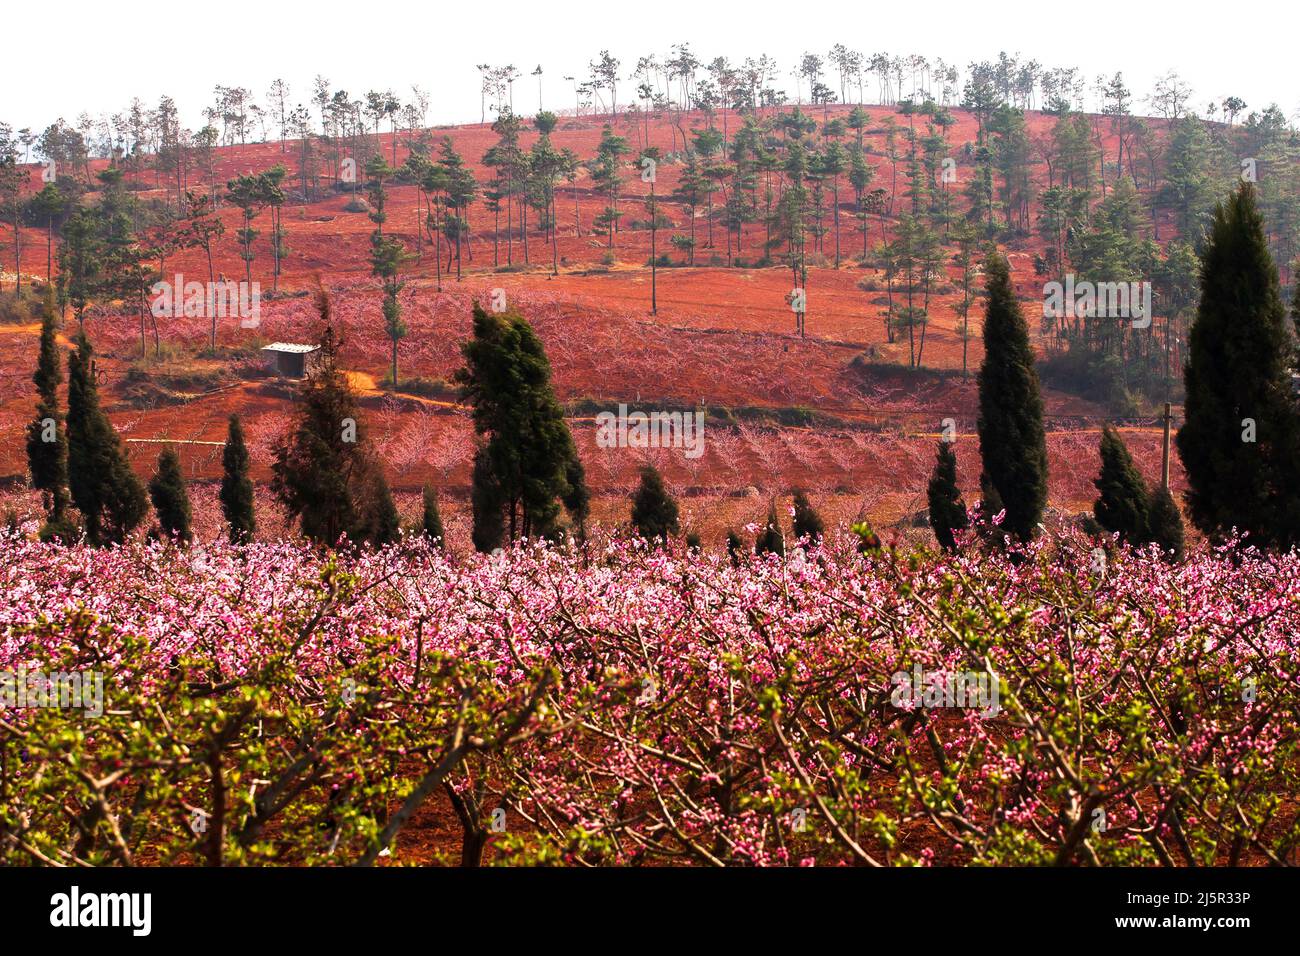 Le paysage des vergers de cerisiers est en pleine floraison sur une colline en fleur de printemps, les vergers communautaires ruraux en Chine du Sud. Concentrez-vous sur la colline. Banque D'Images